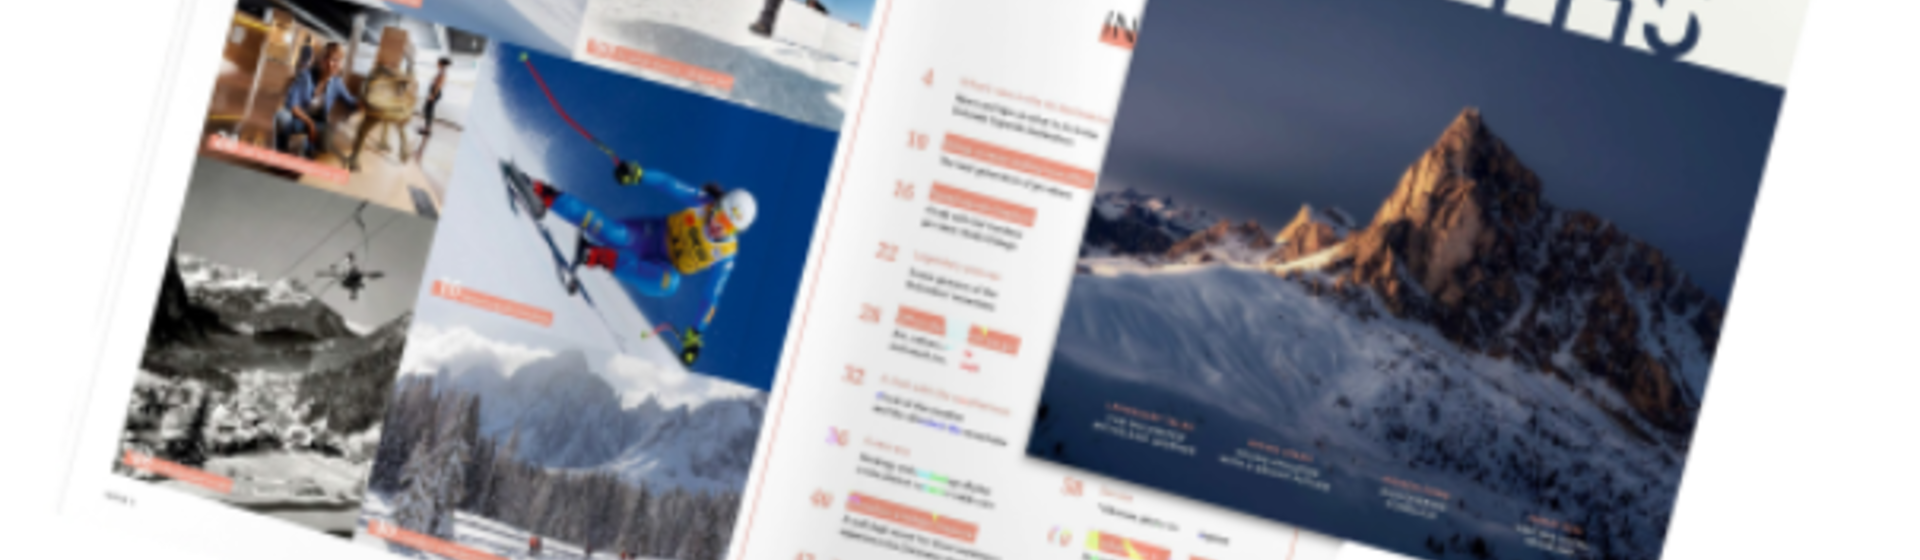 È pronta alla lettura la rivista Dolomiti SuperSki inverno 2022-23